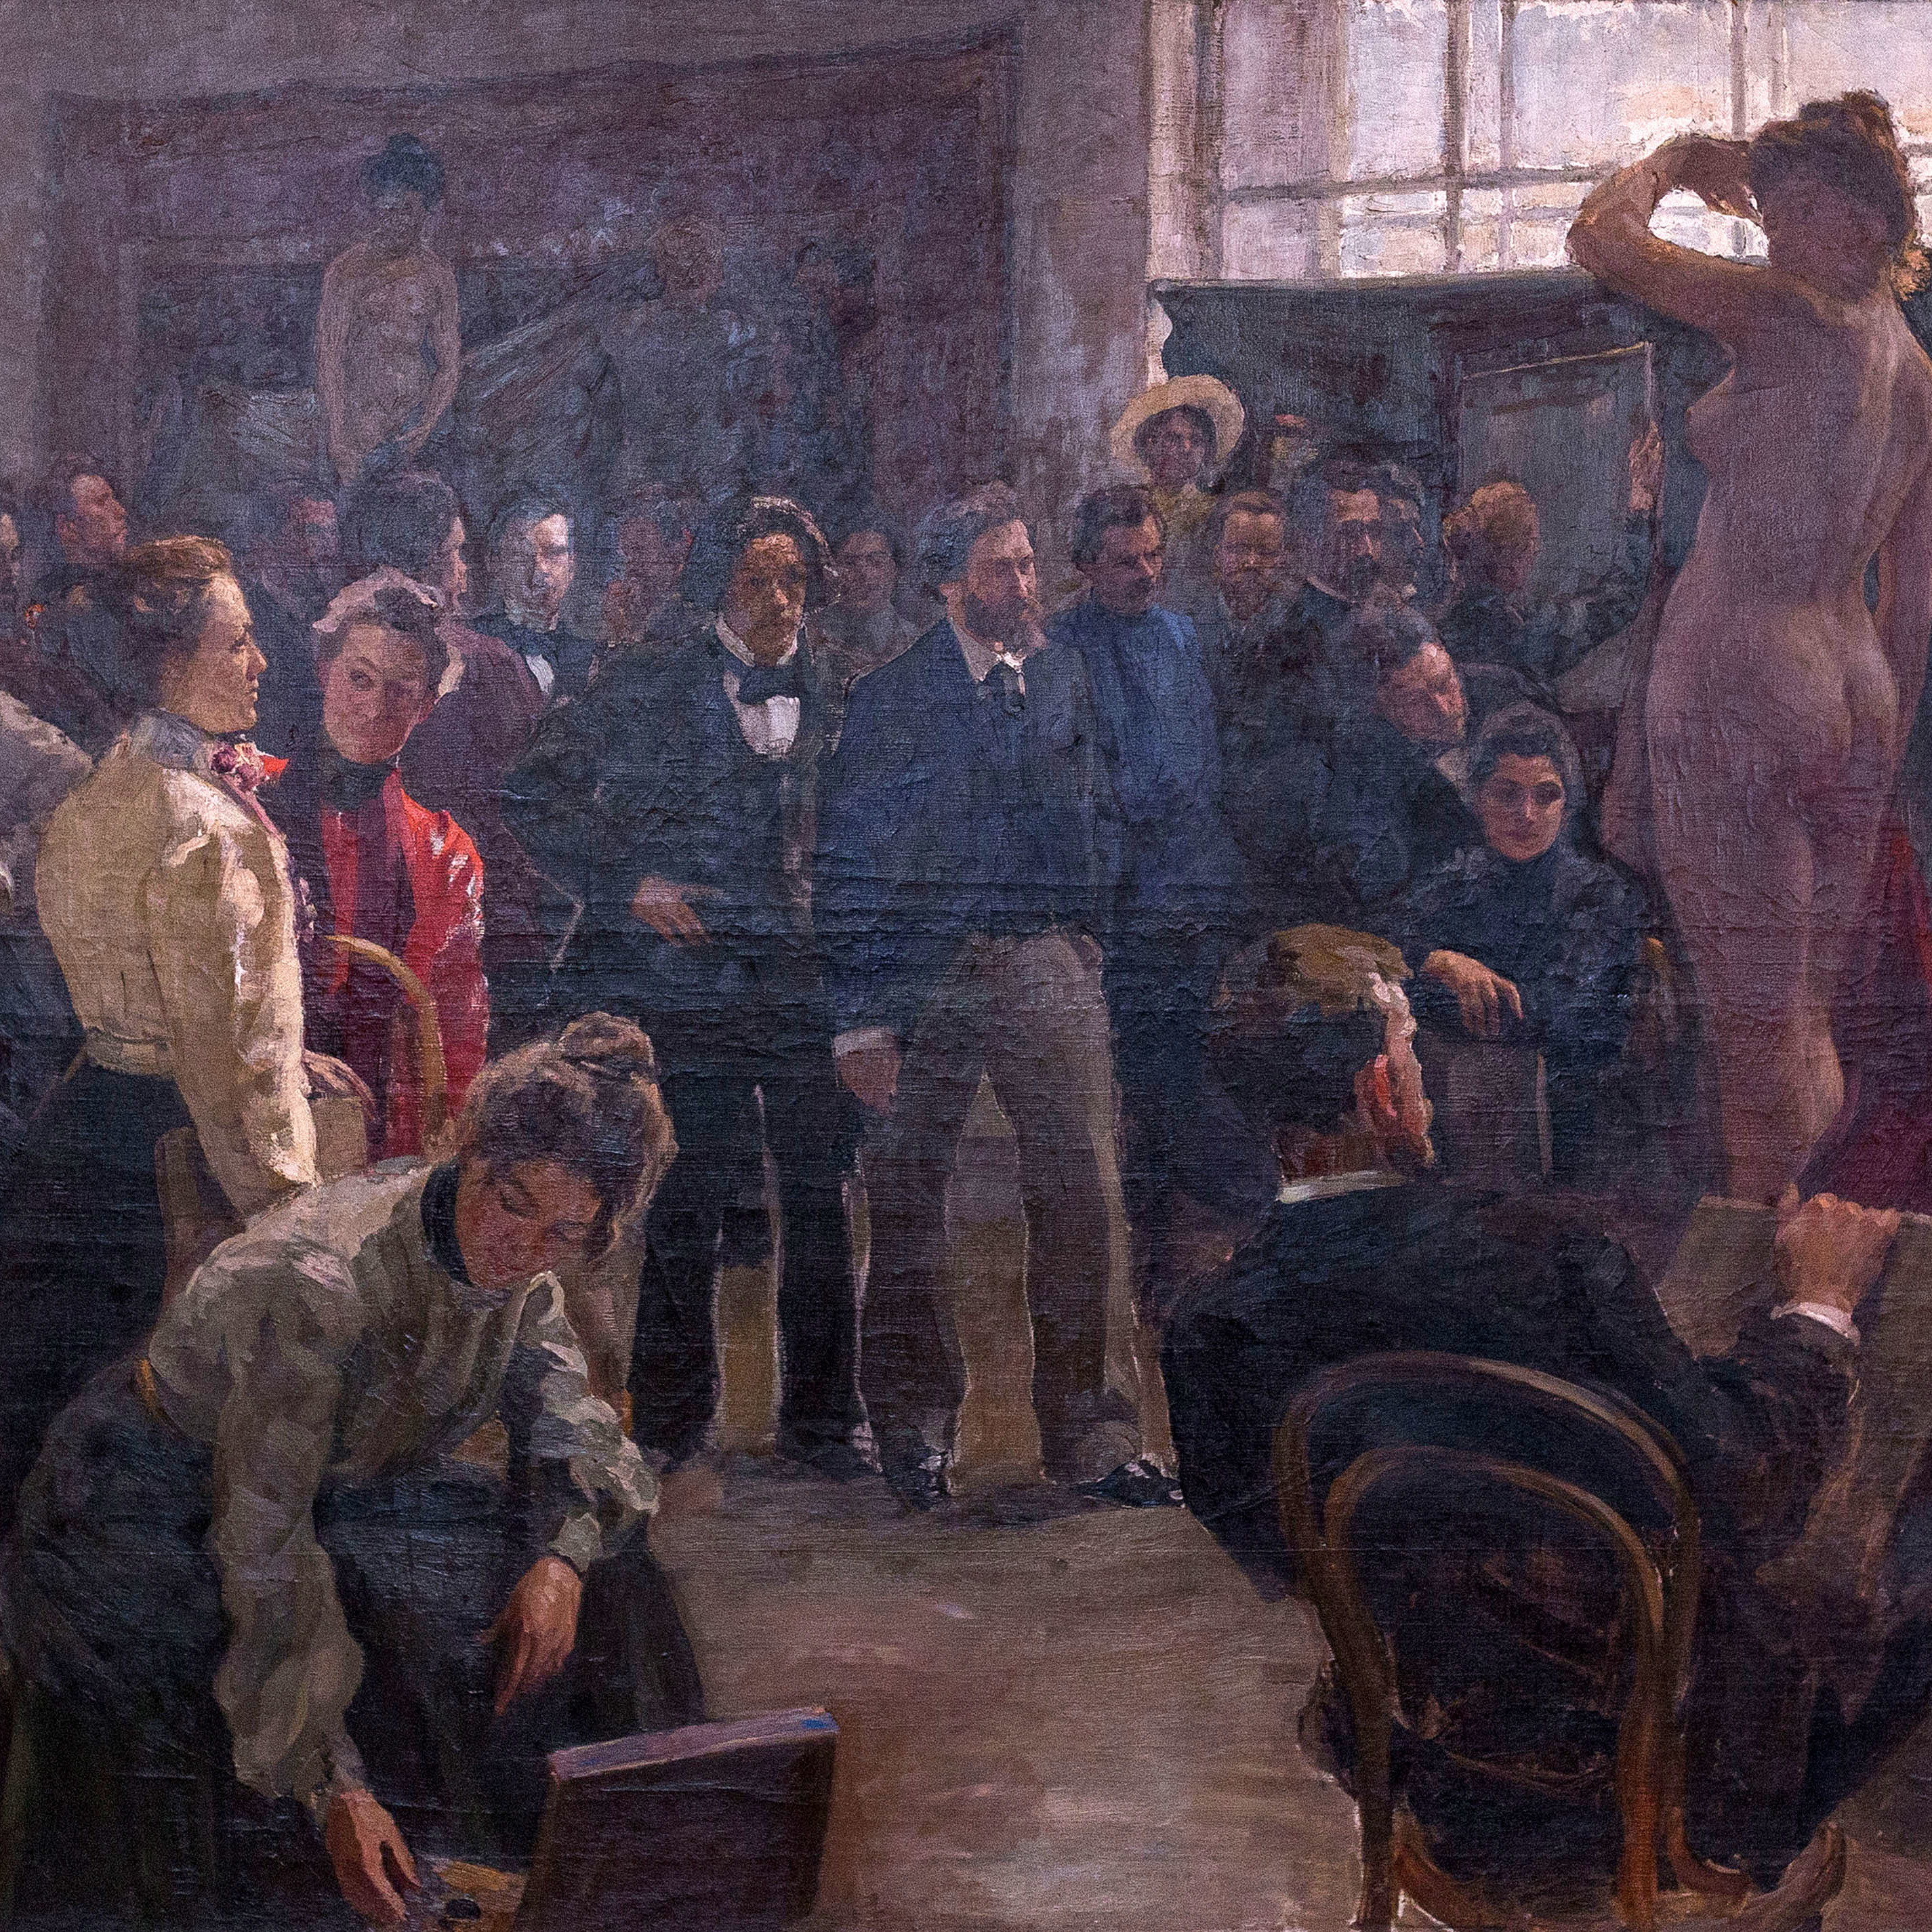 Репин и его ученики выставка. Репин. "Постановка натуры в мастерской Репина". 1899-1903.